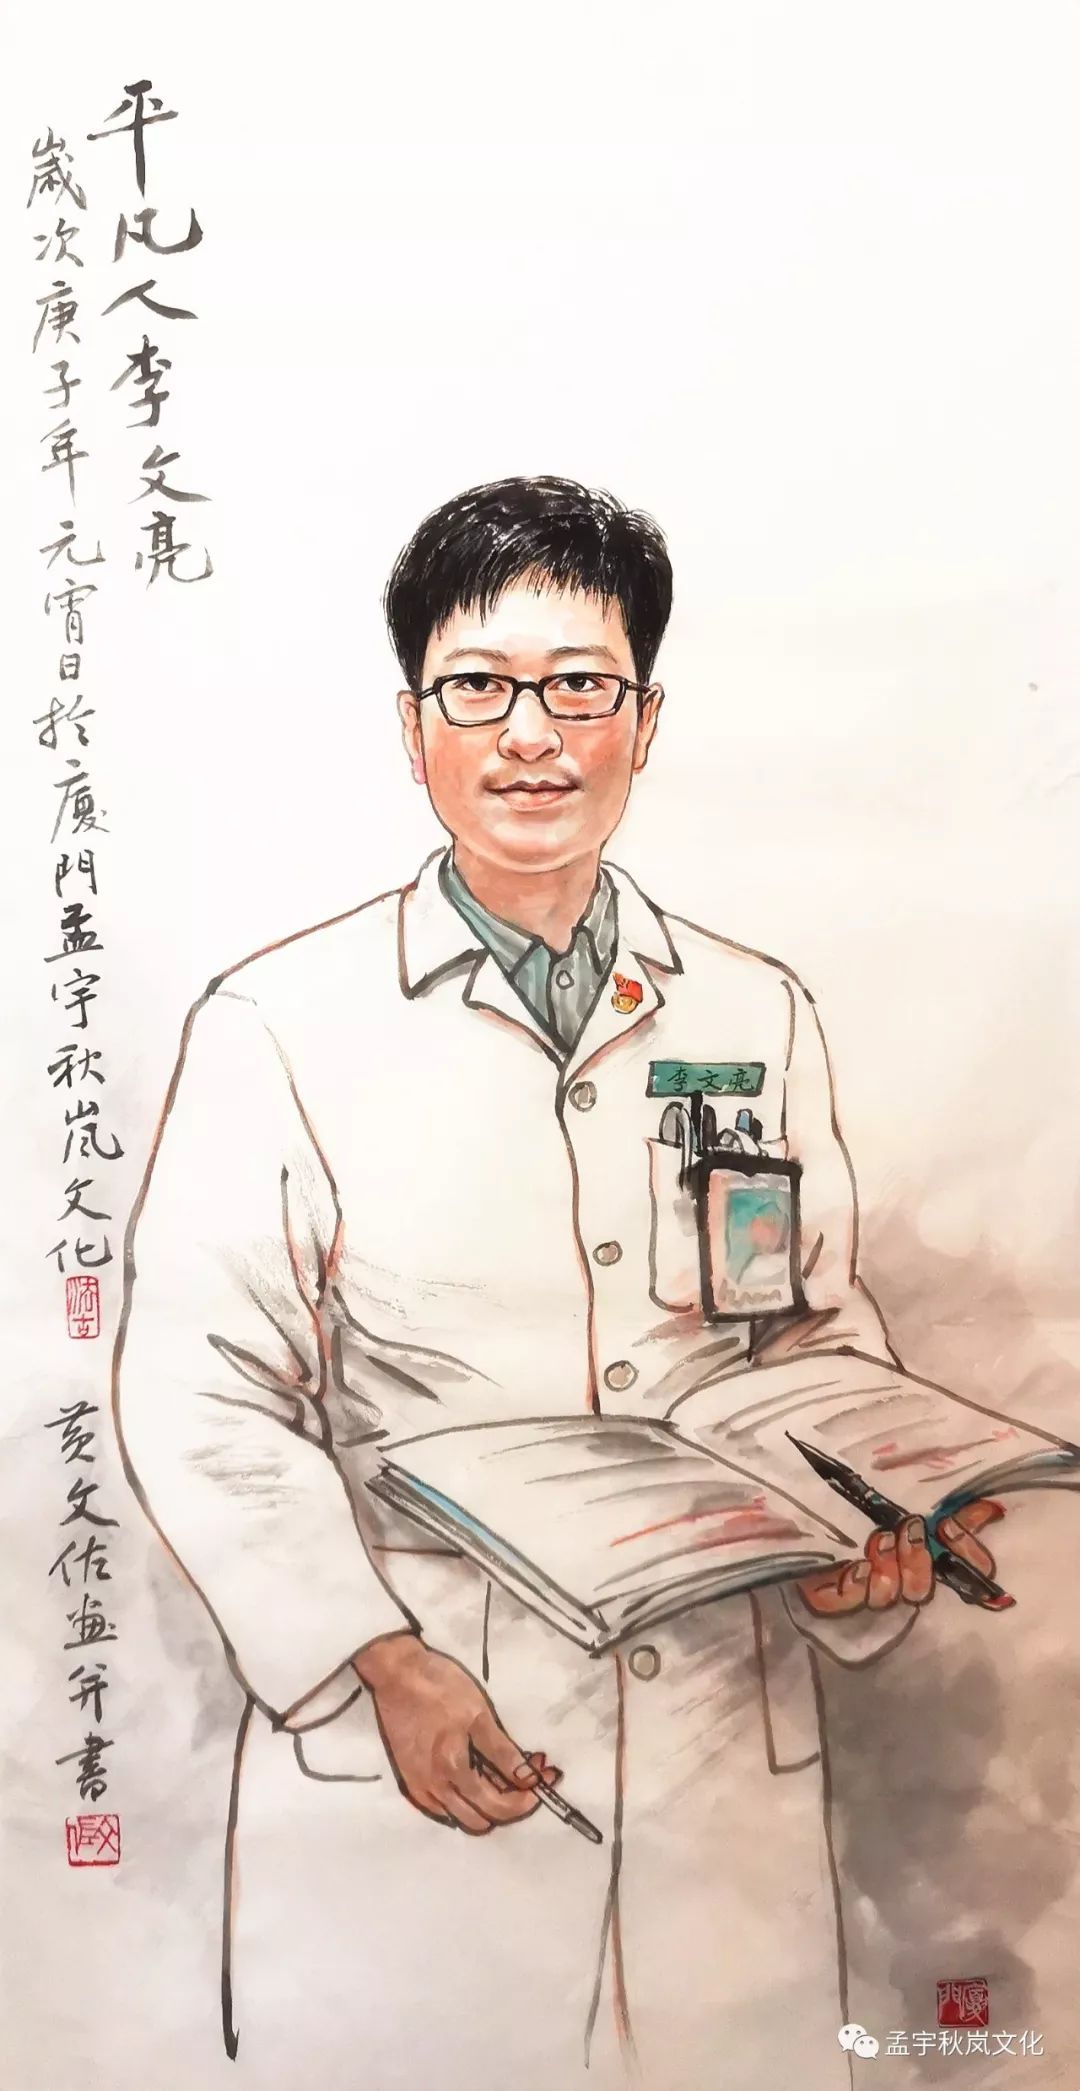 水墨肖像画《平凡人李文亮》(50x100cm),      黄文佐(2020年作)